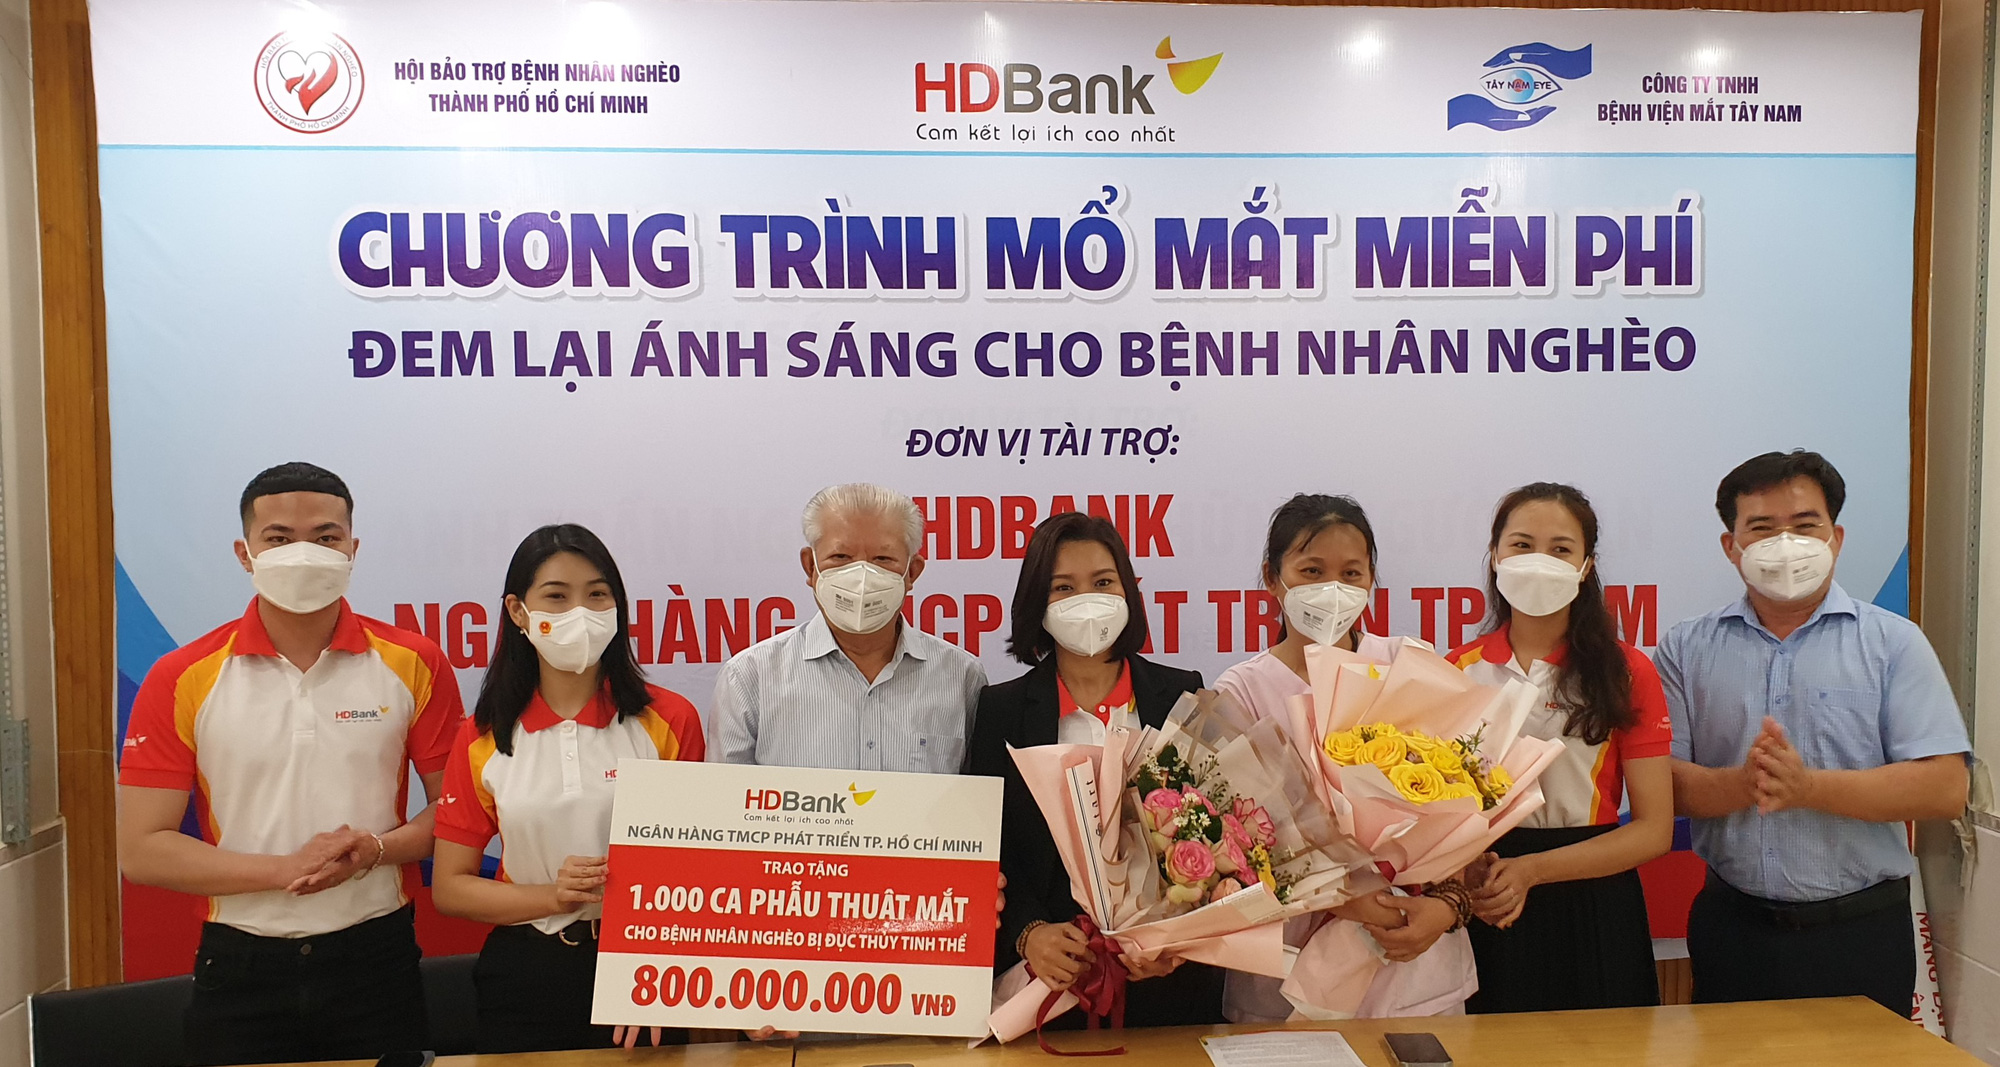 HDBank trao tặng 2.800 thẻ Bảo hiểm y tế và tài trợ 1.000 ca phẫu thuật mắt cho người dân - Ảnh 5.